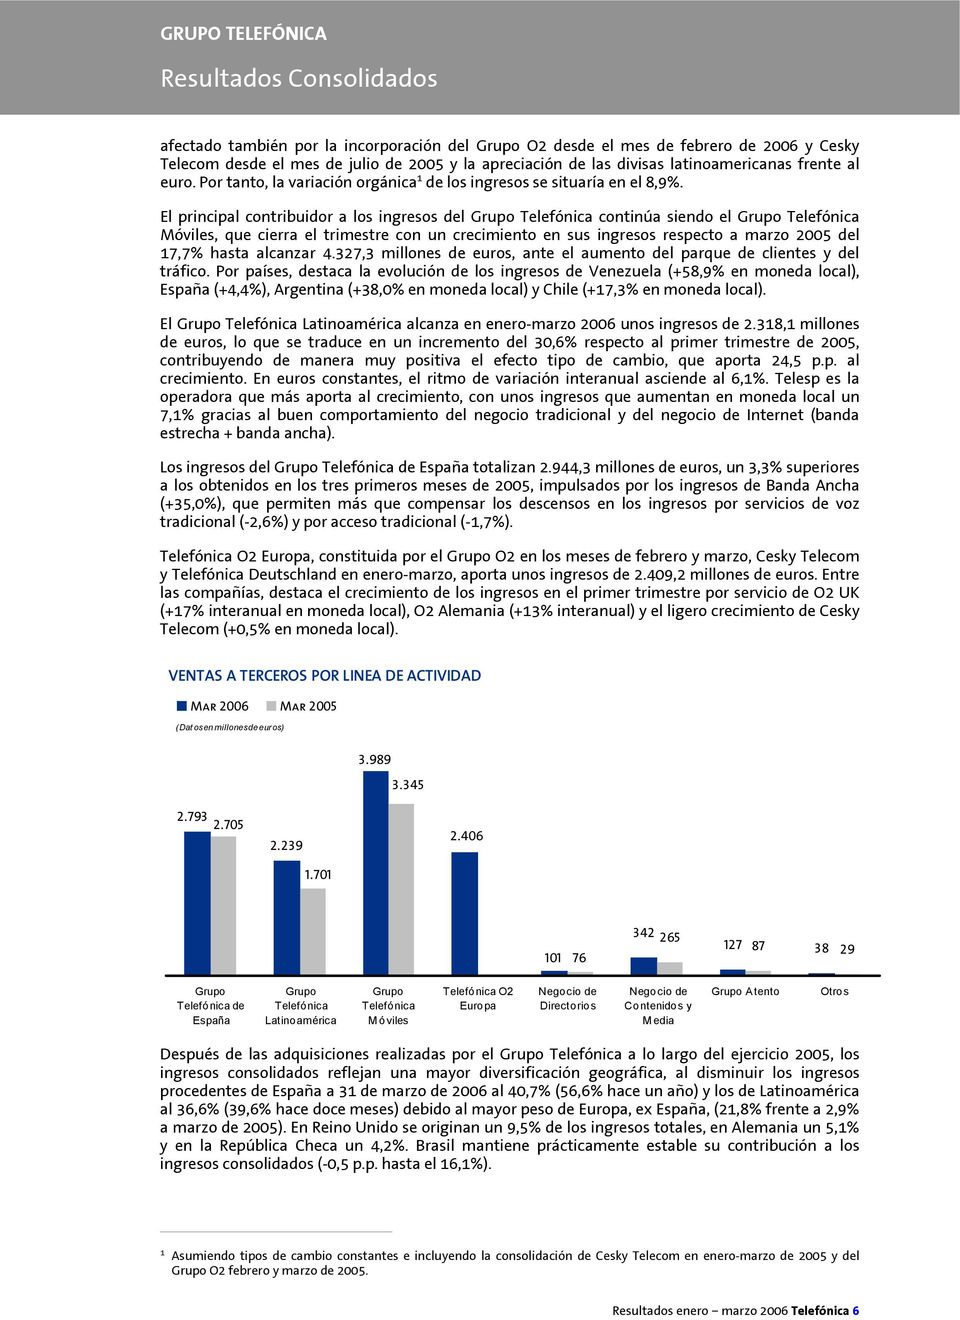 El principal contribuidor a los ingresos del Grupo Telefónica continúa siendo el Grupo Telefónica Móviles, que cierra el trimestre con un crecimiento en sus ingresos respecto a marzo 2005 del 17,7%